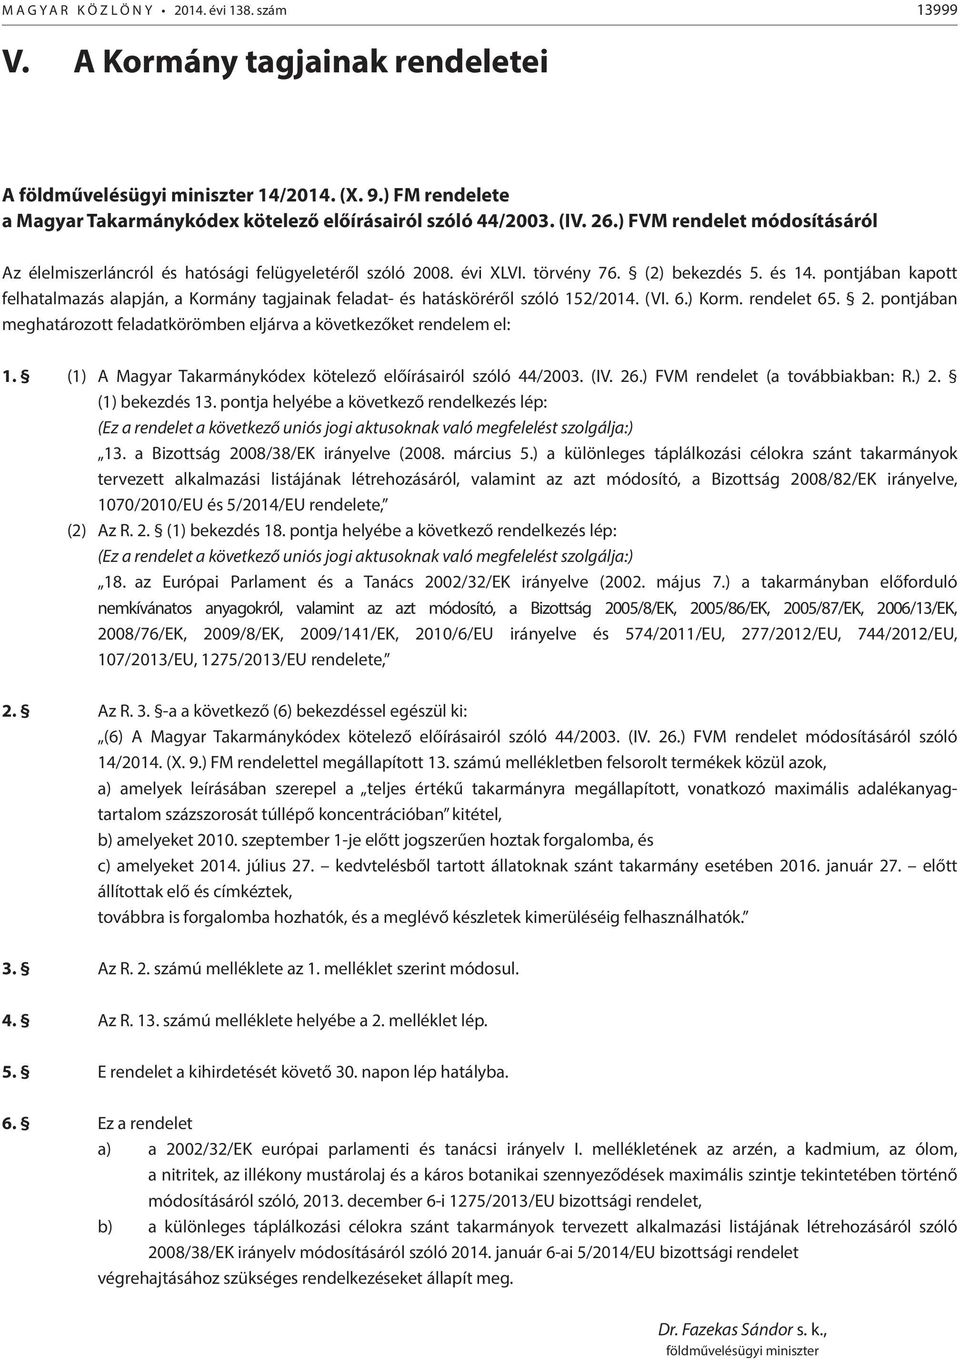 (2) bekezdés 5. és 14. pontjában kapott felhatalmazás alapján, a Kormány tagjainak feladat- és hatásköréről szóló 152/2014. (VI. 6.) Korm. rendelet 65. 2.